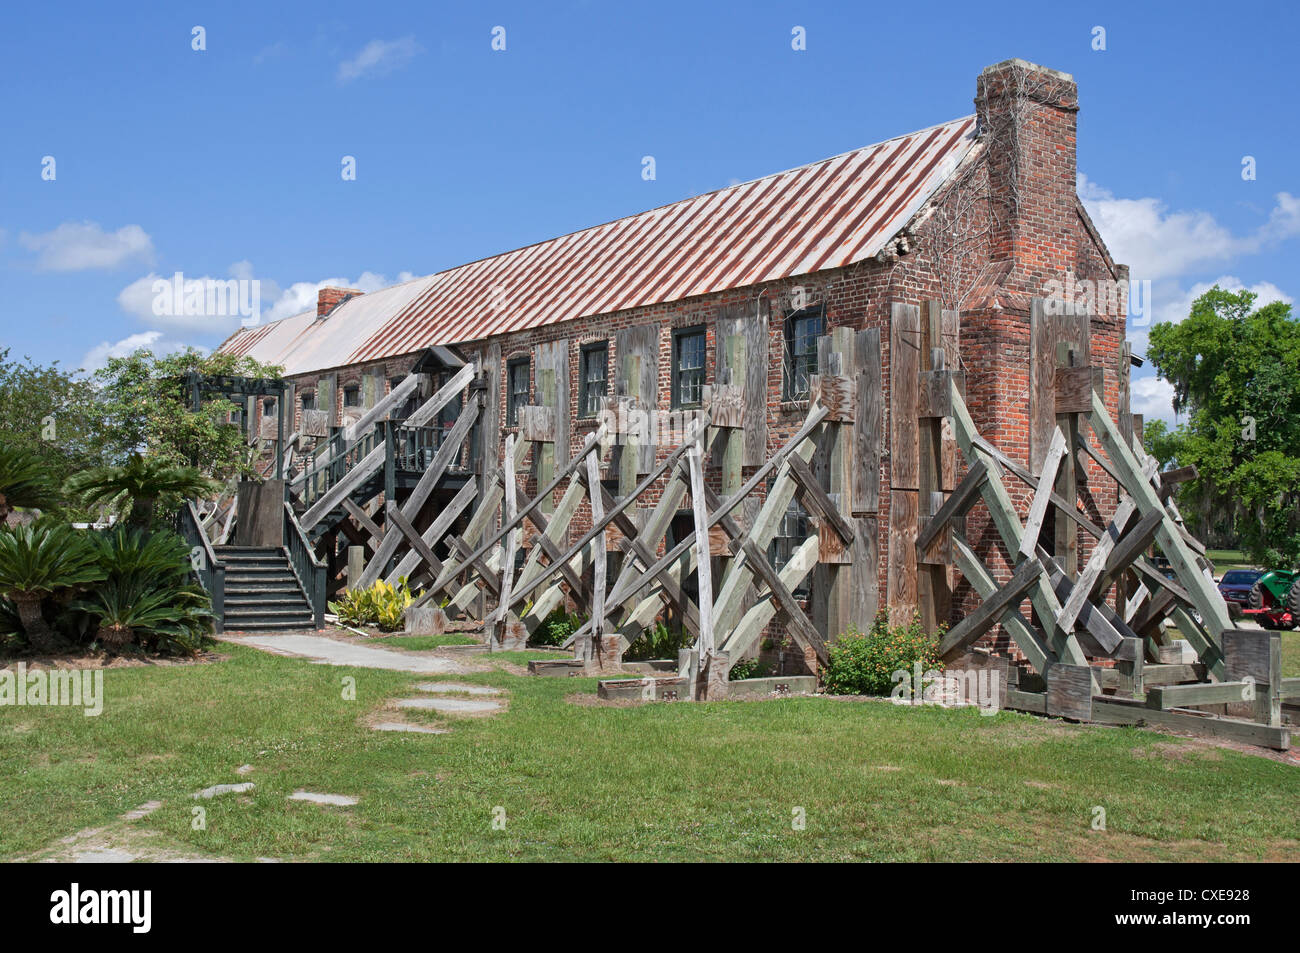 Restauration de l'édifice 1830 Gin de coton à Boone Hall Plantation près de Charleston, Caroline du Sud. Natl. Reg. Hist. Endroits. Banque D'Images